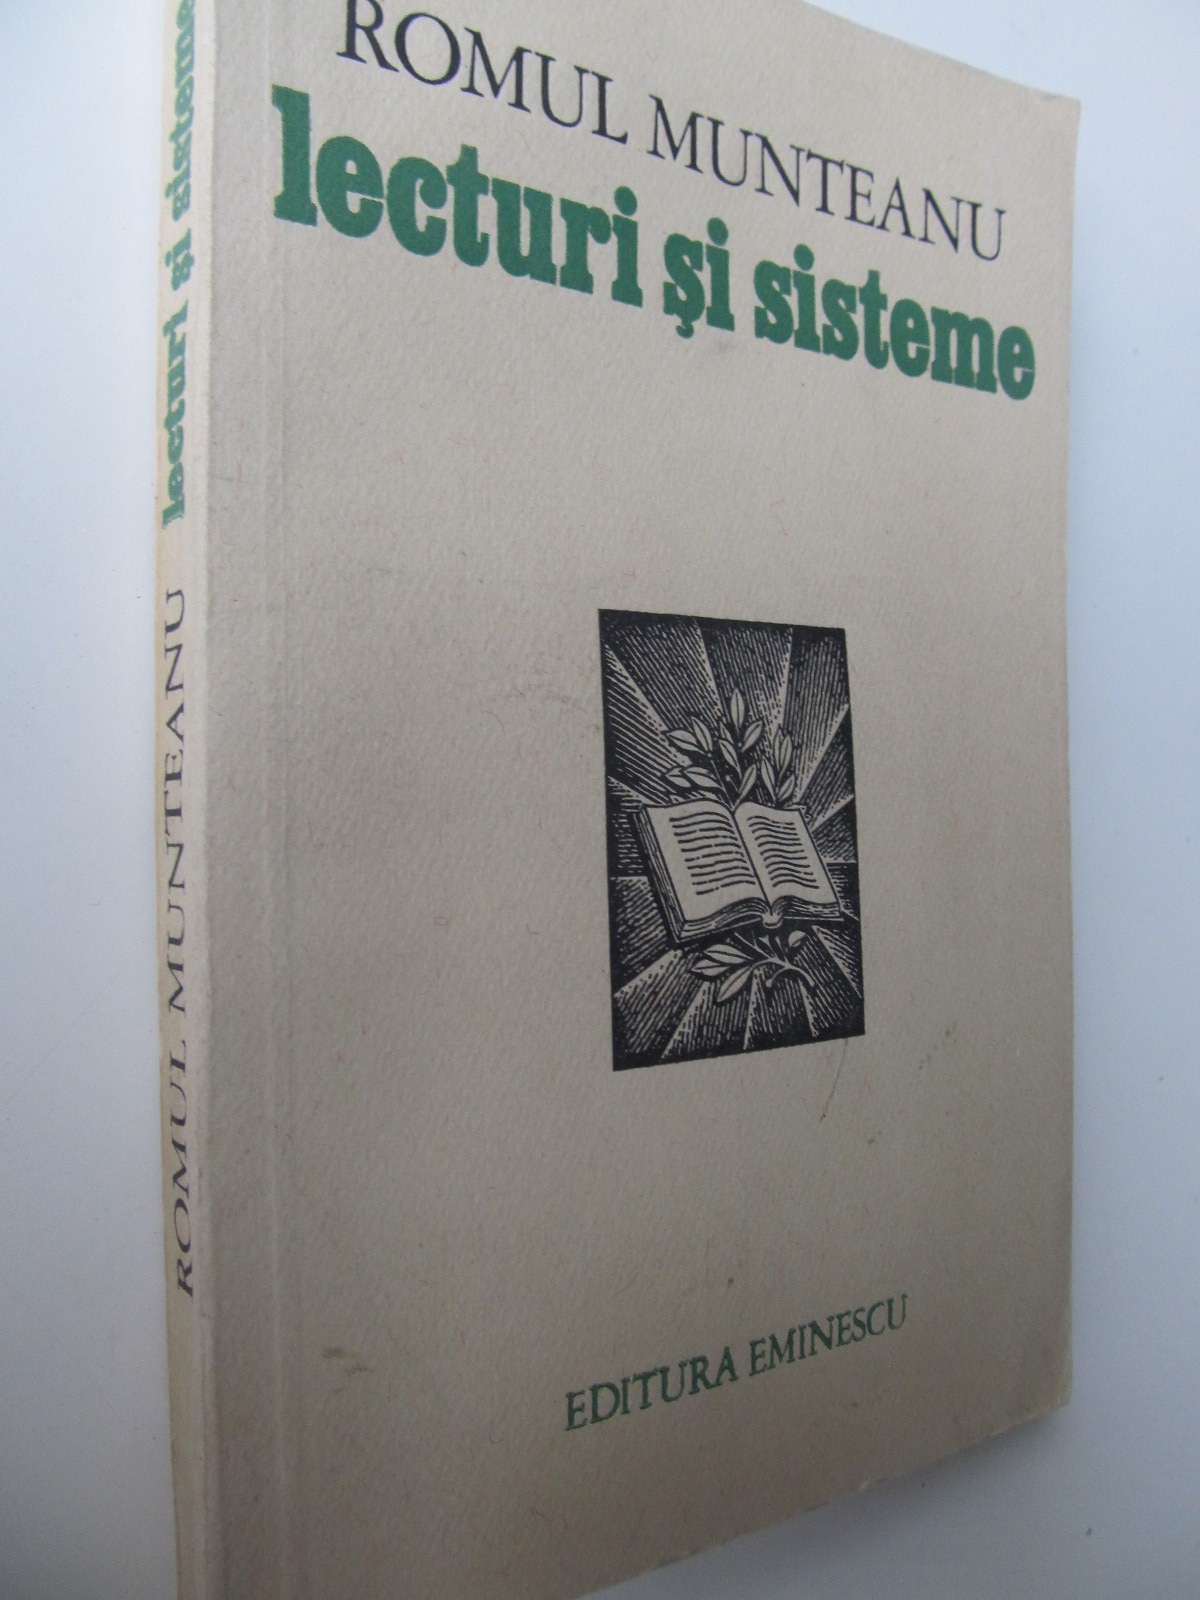 Lecturi si sisteme - Romul Munteanu | Detalii carte